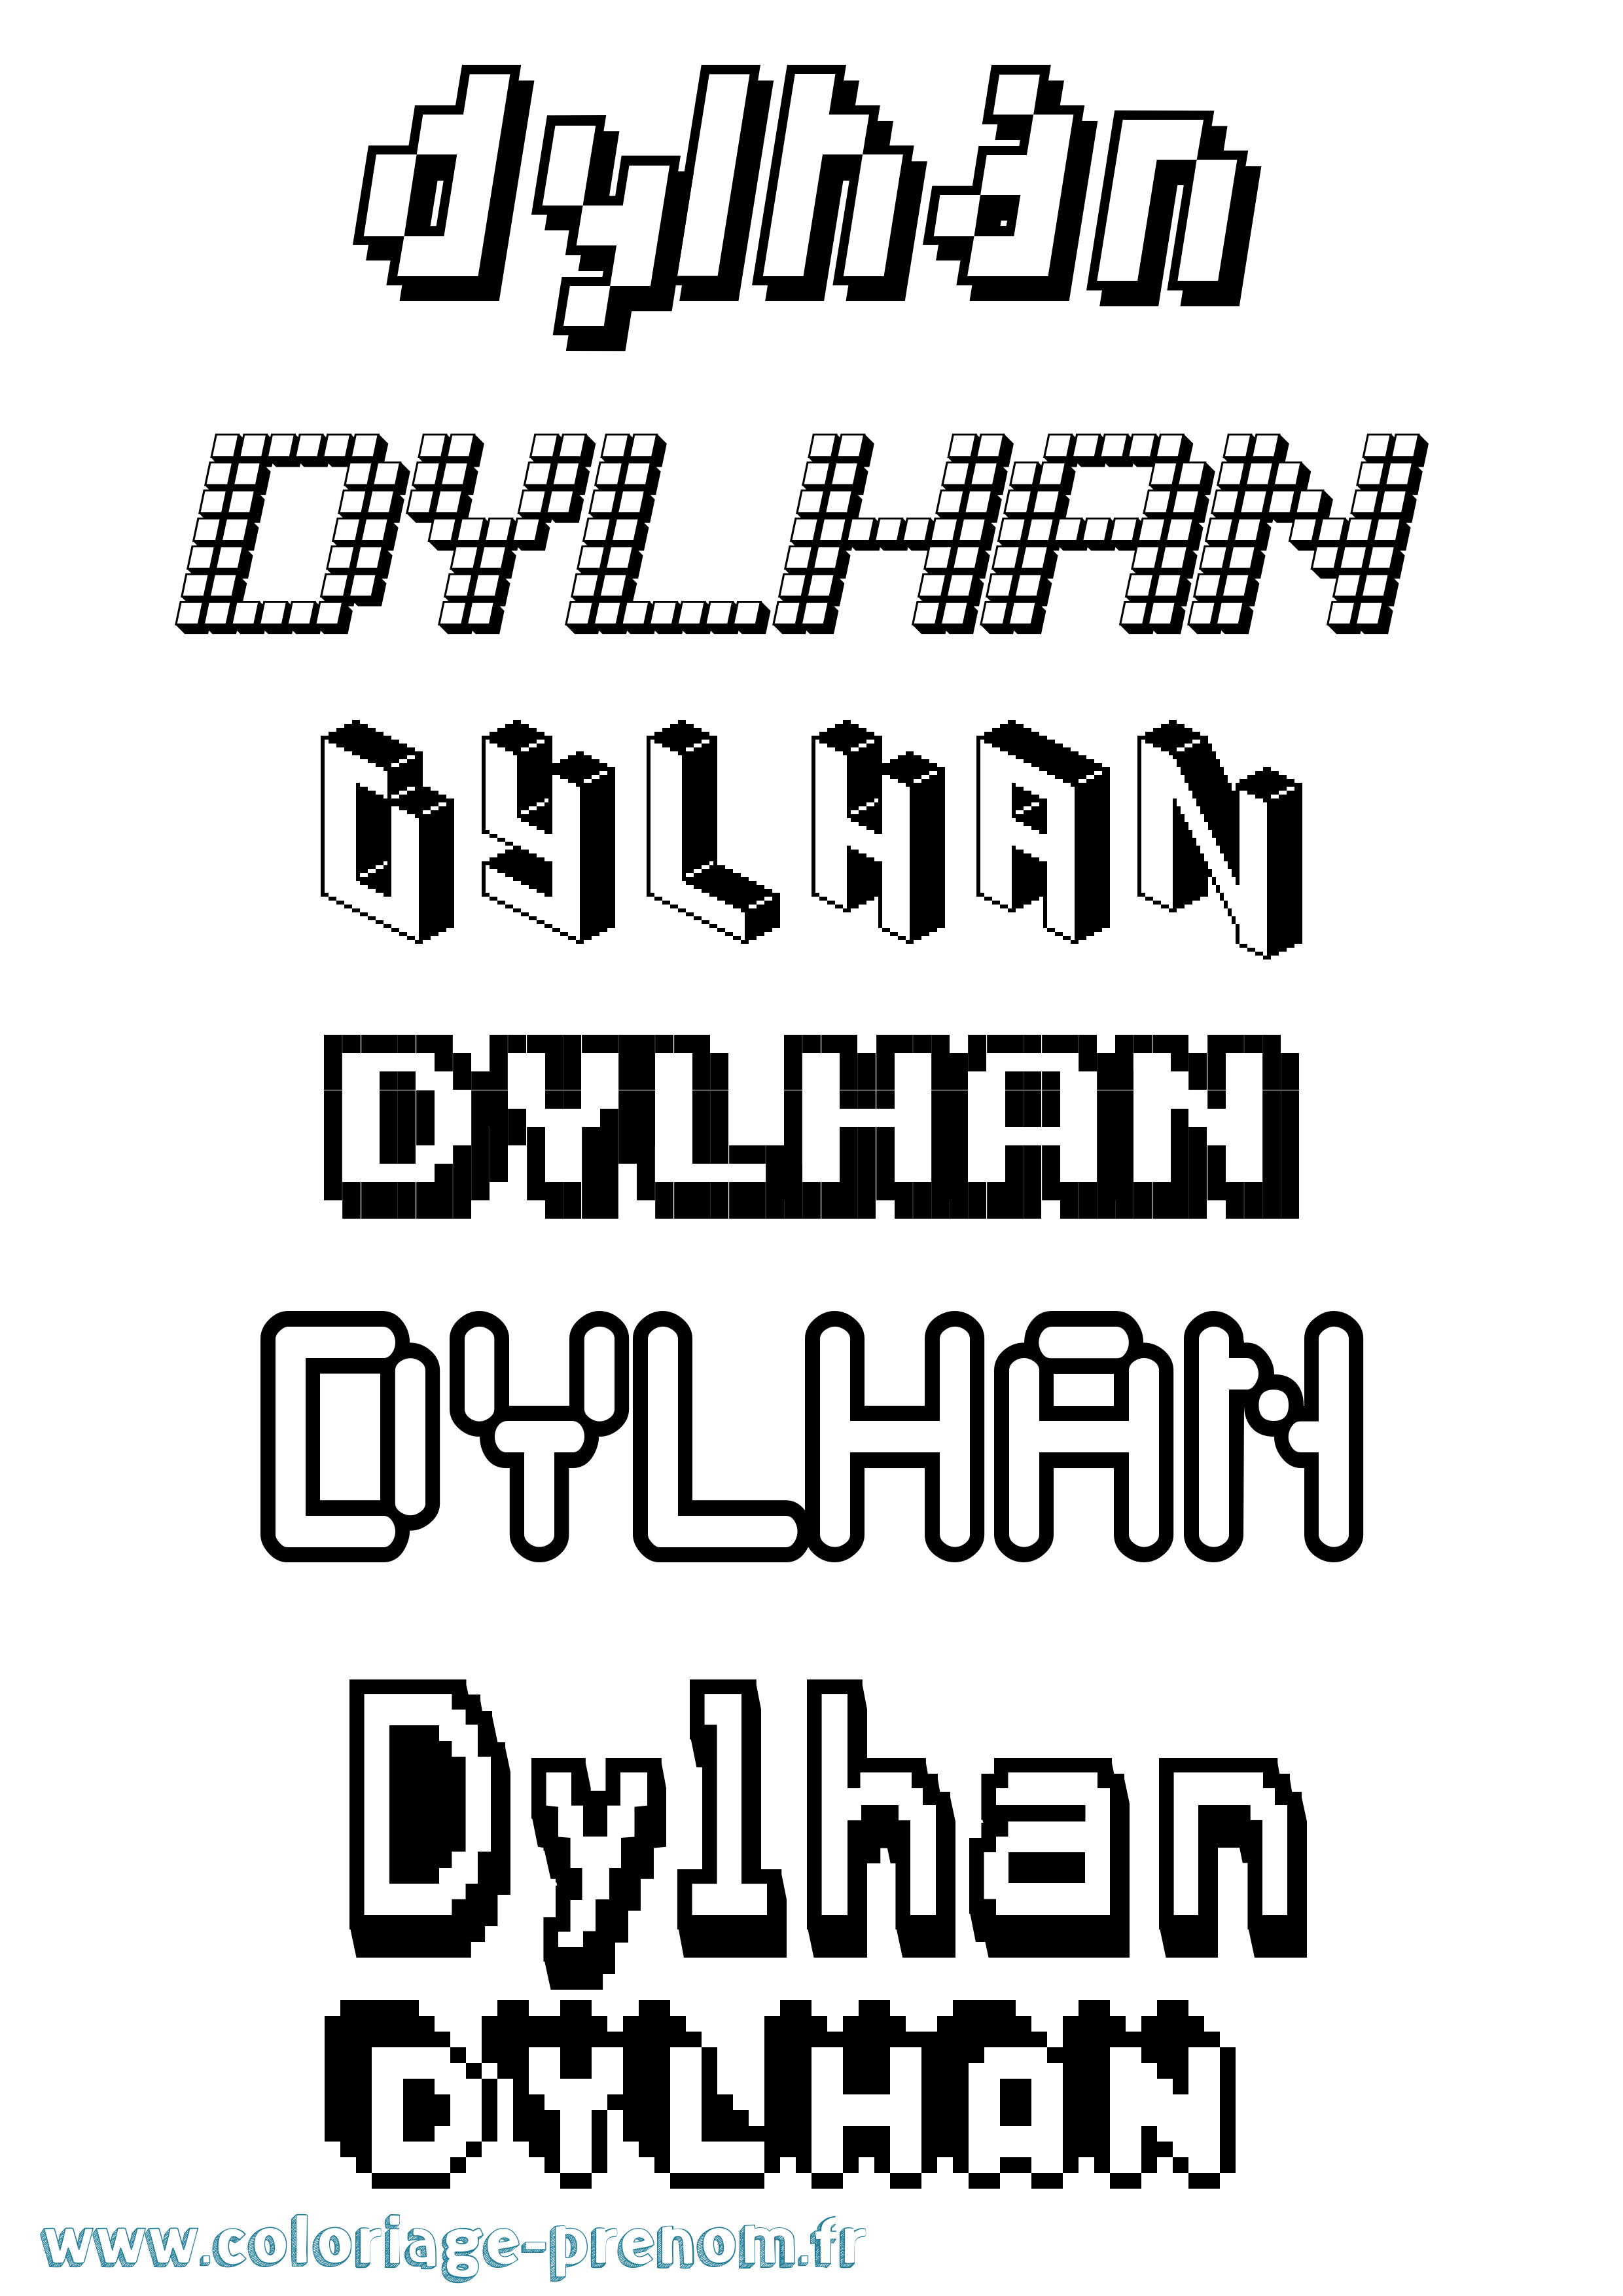 Coloriage prénom Dylhan Pixel